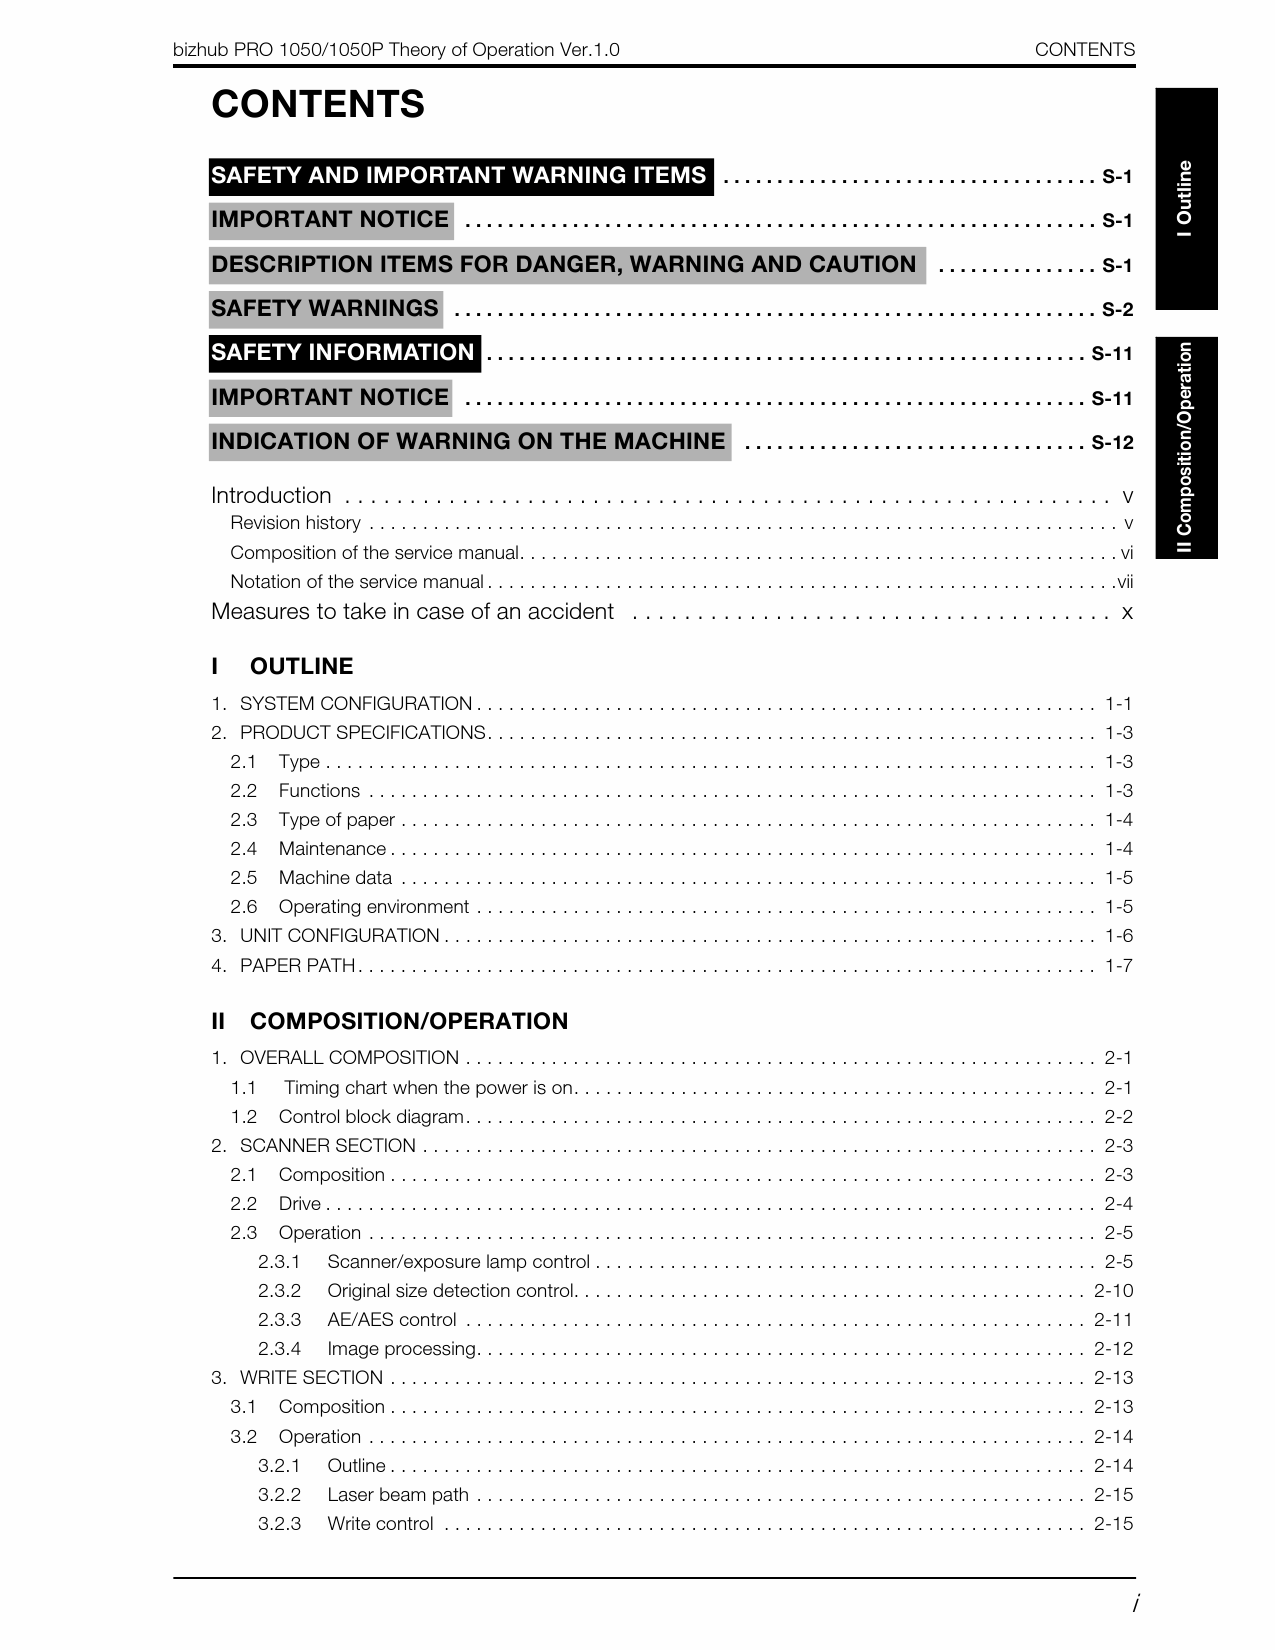 Konica-Minolta bizhub-PRO 1050 1050P THEORY-OPERATION Service Manual-2